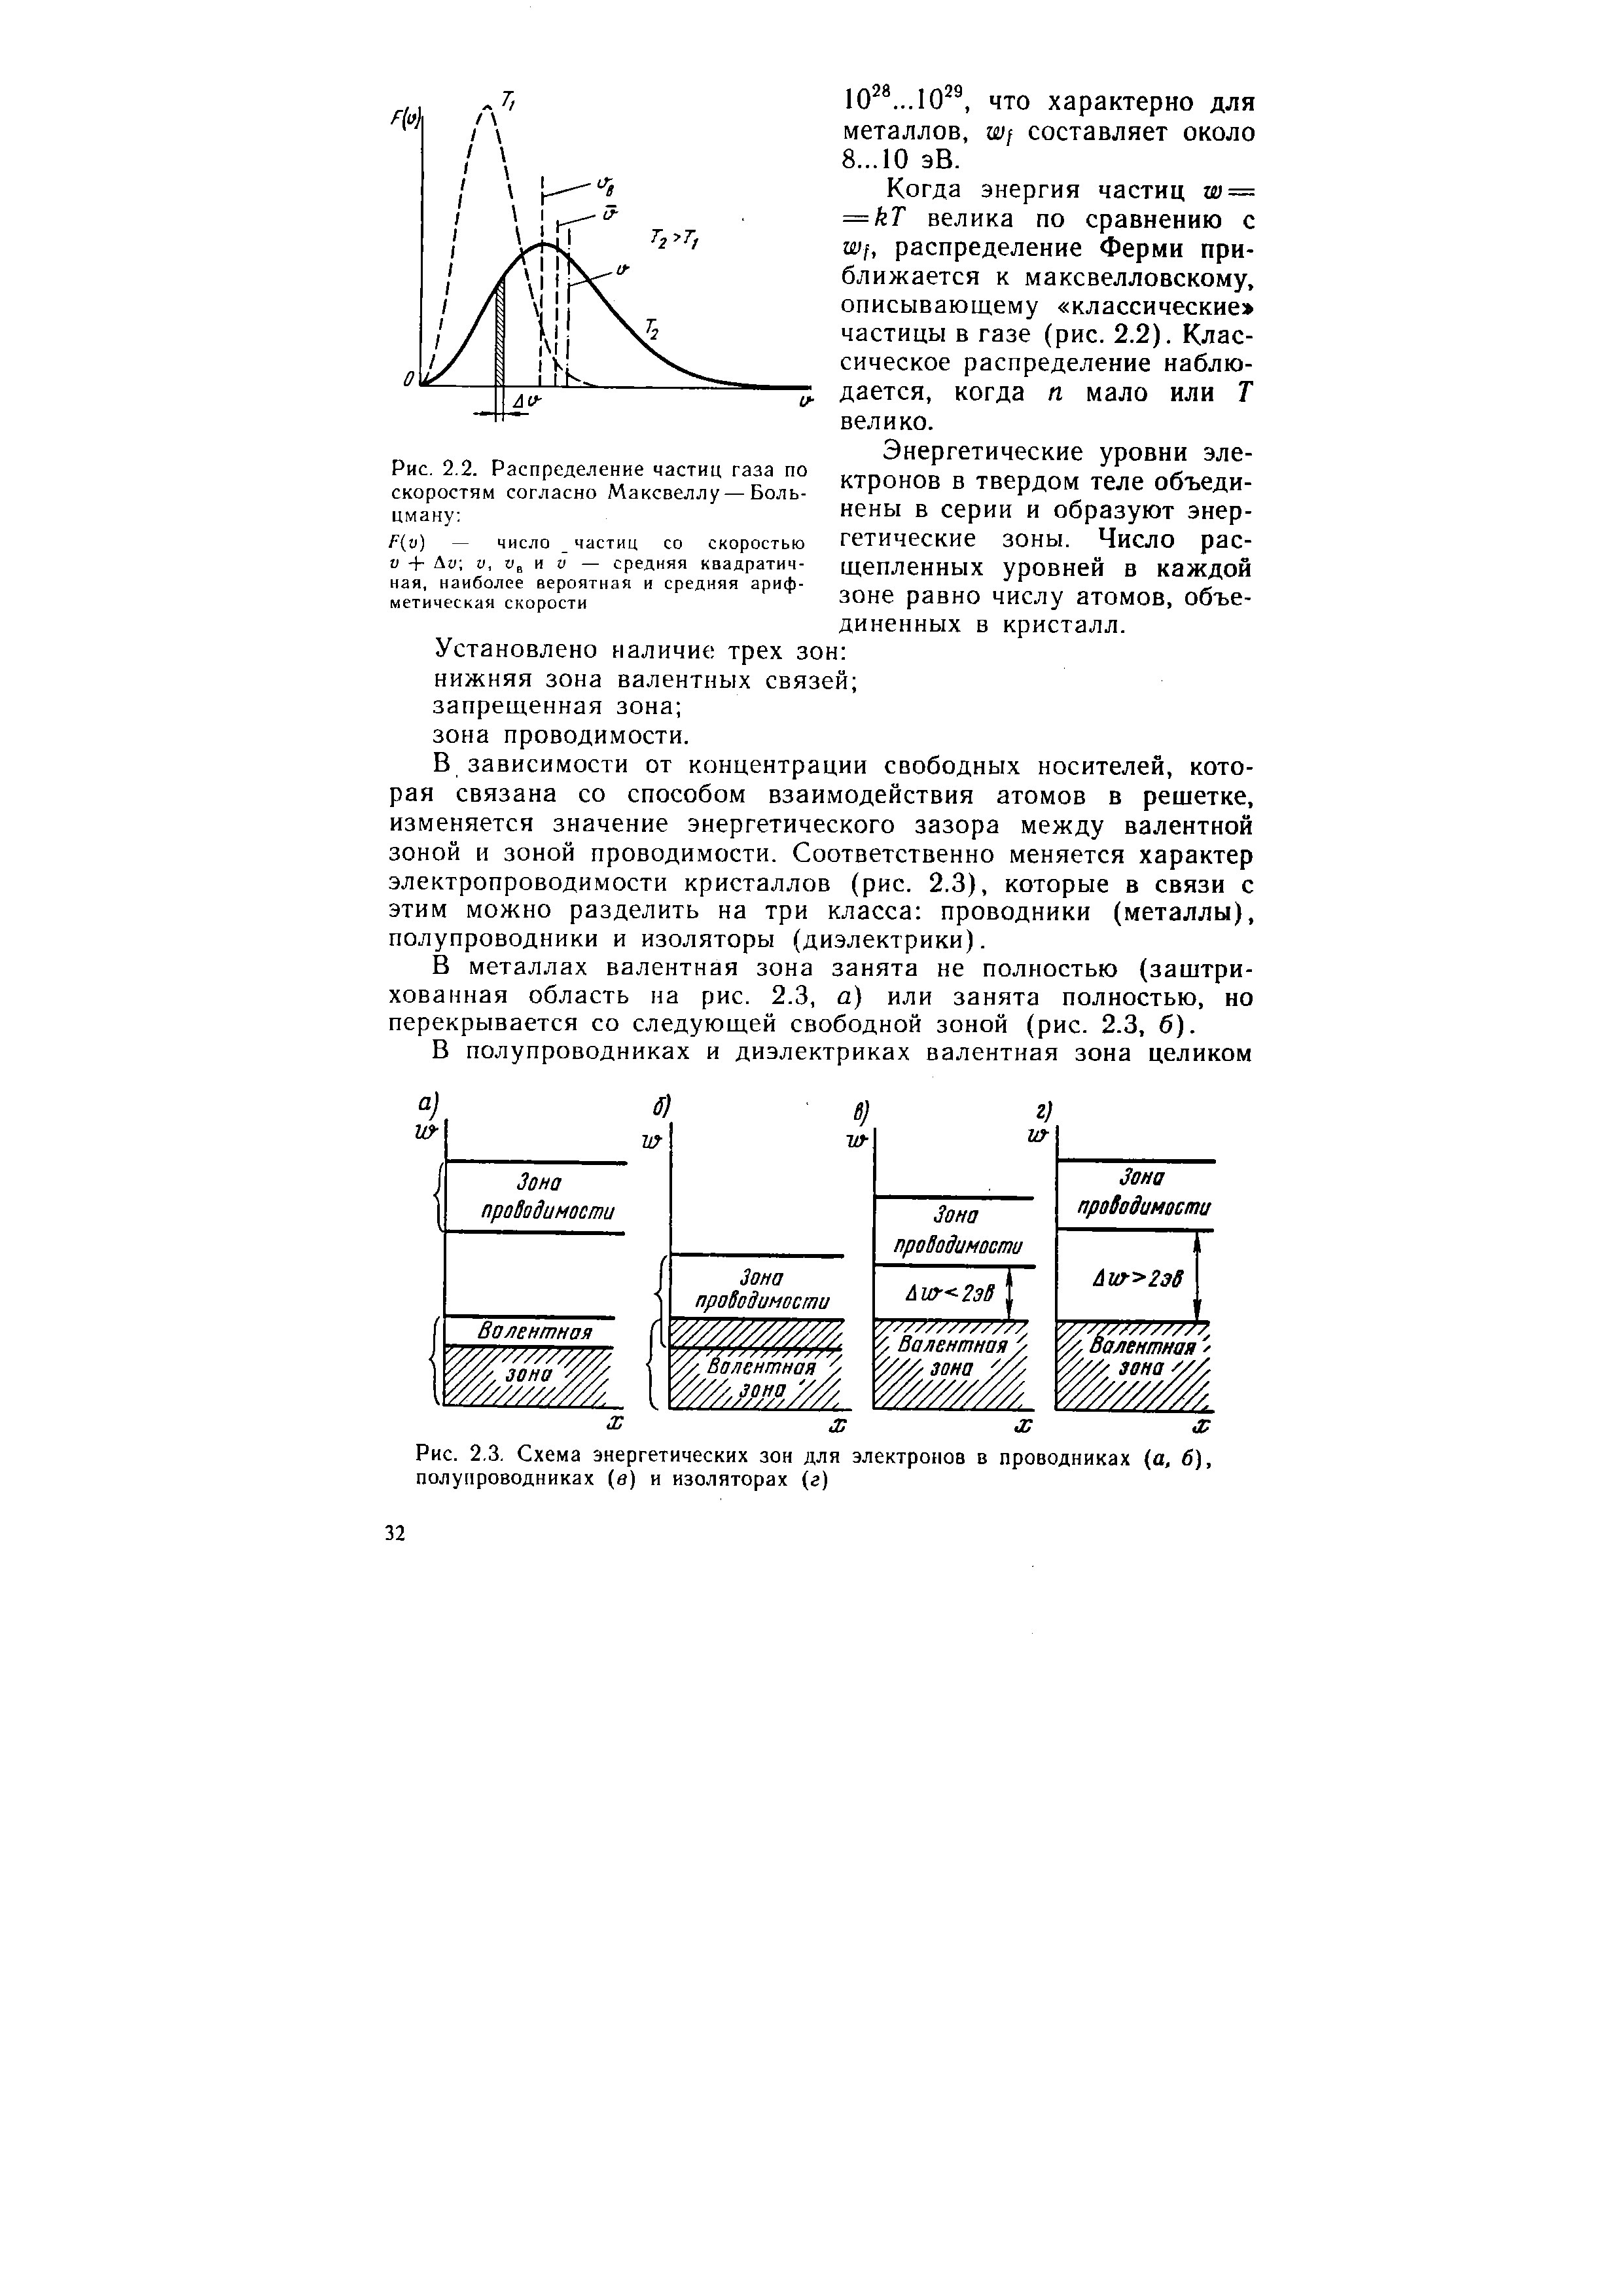 Рис. 2,3. Схема энергетических зон для электронов в проводниках (а, б), полупроводниках (в) и изоляторах (г)
